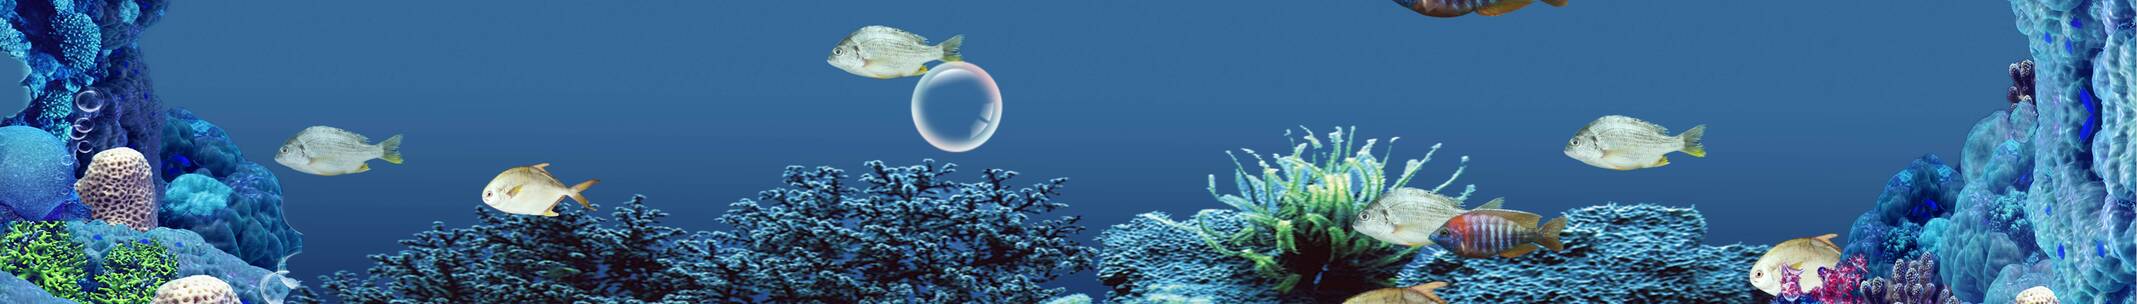 海底鲨鱼 鱼群冲屏 海底世界 水泡泡